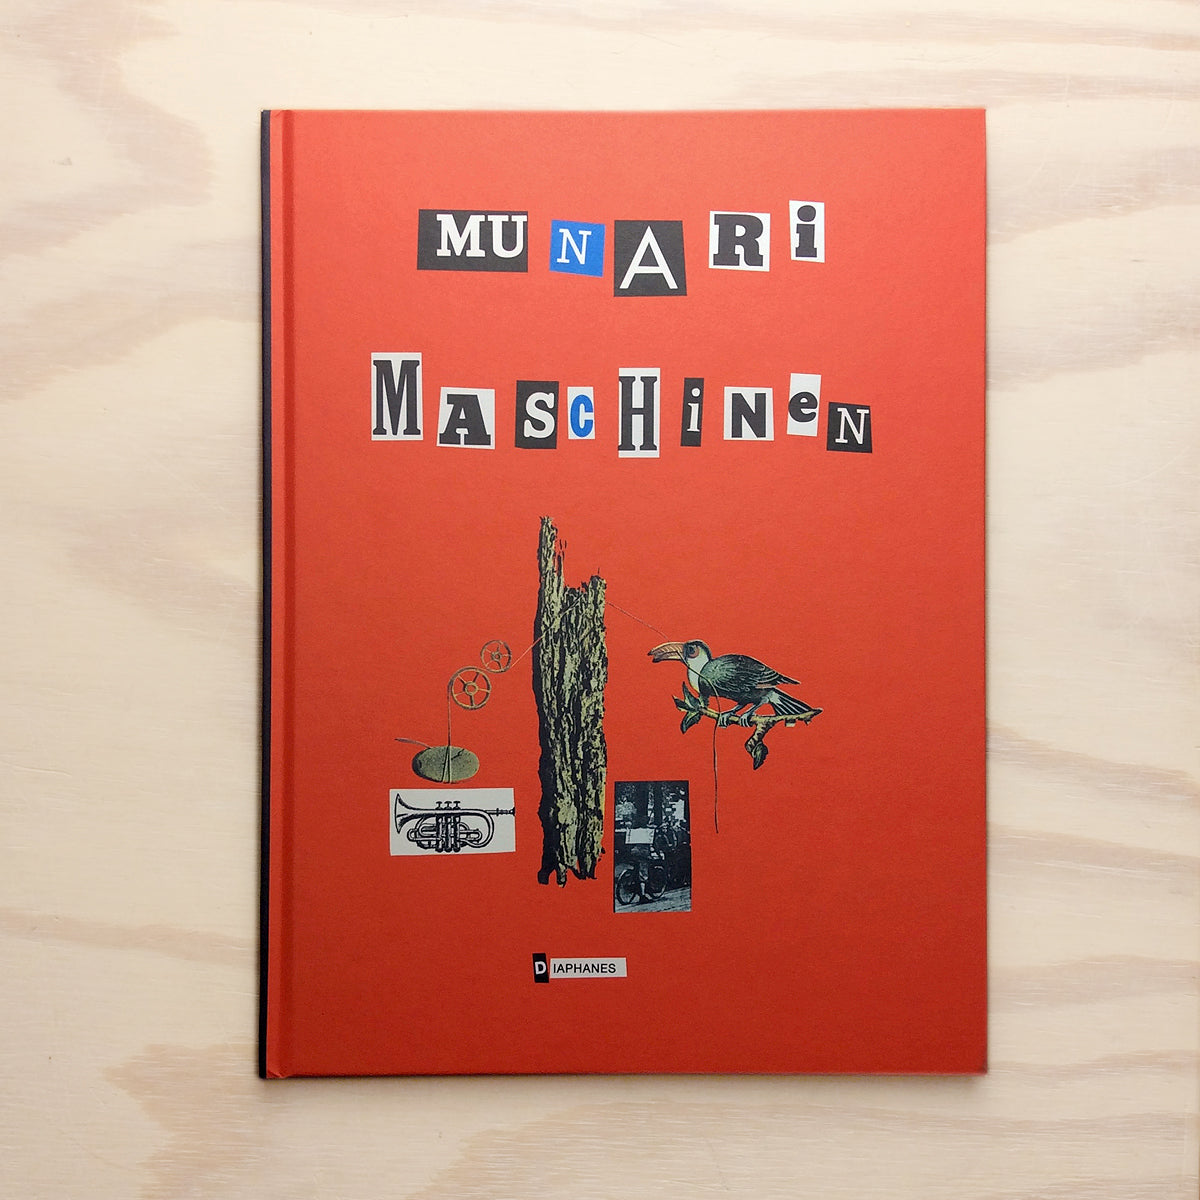 Munari-Maschinen